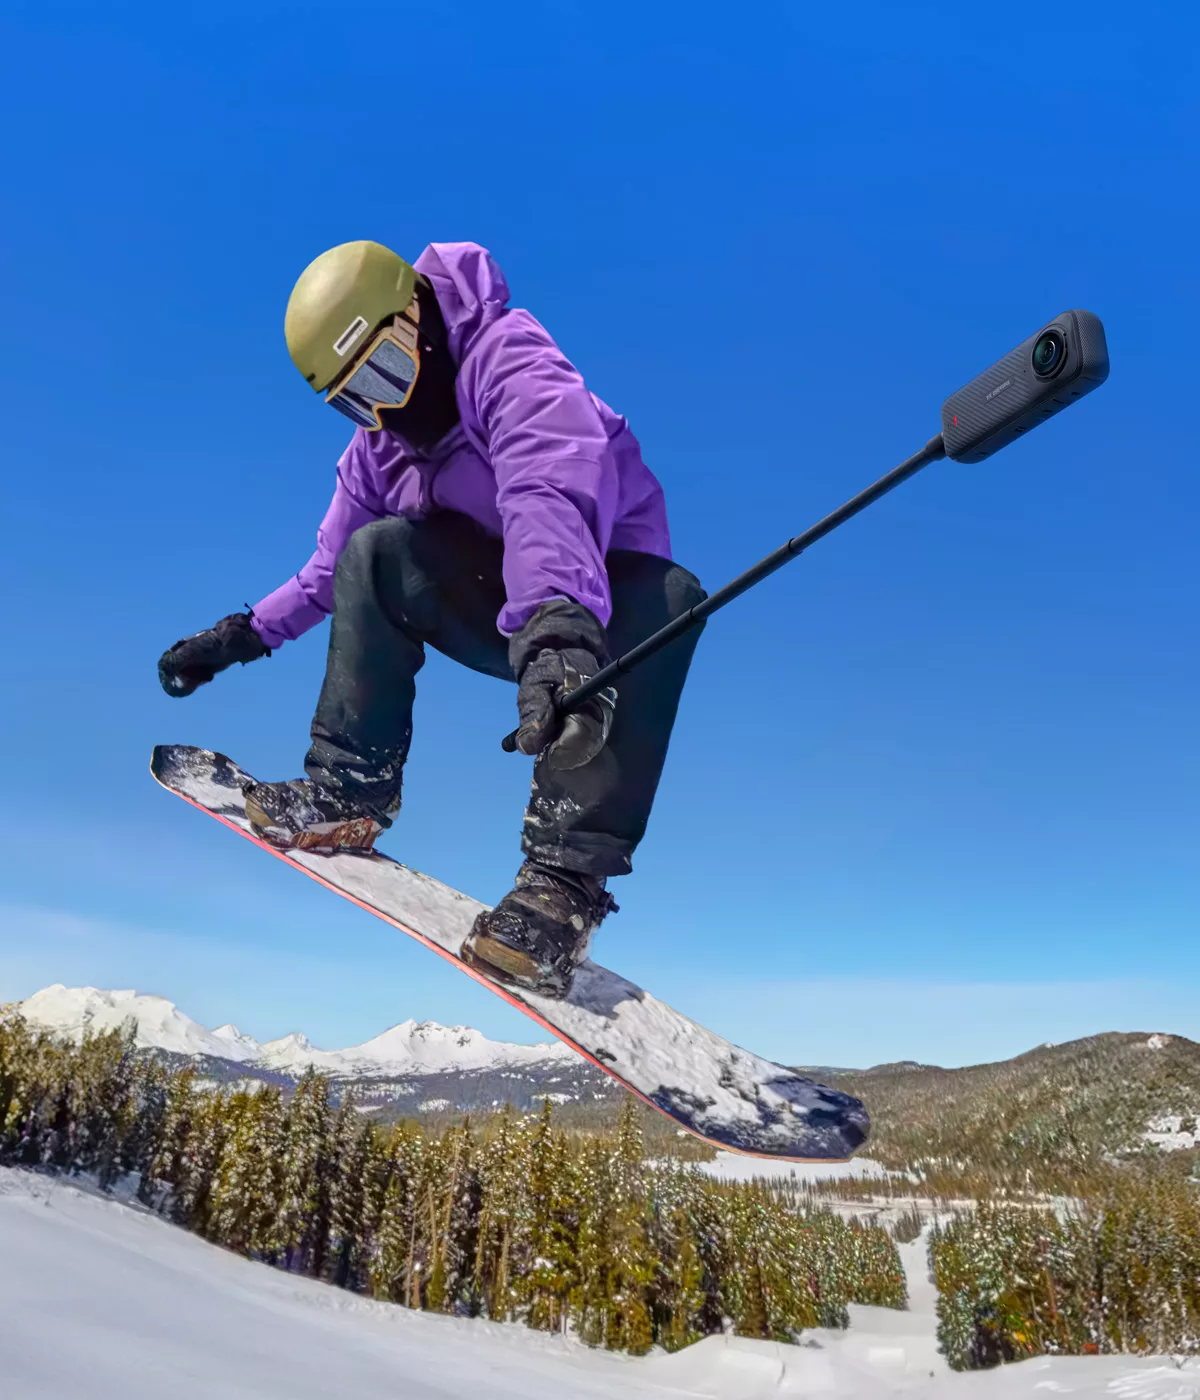 Snowboardeur en action sur piste enneigée.